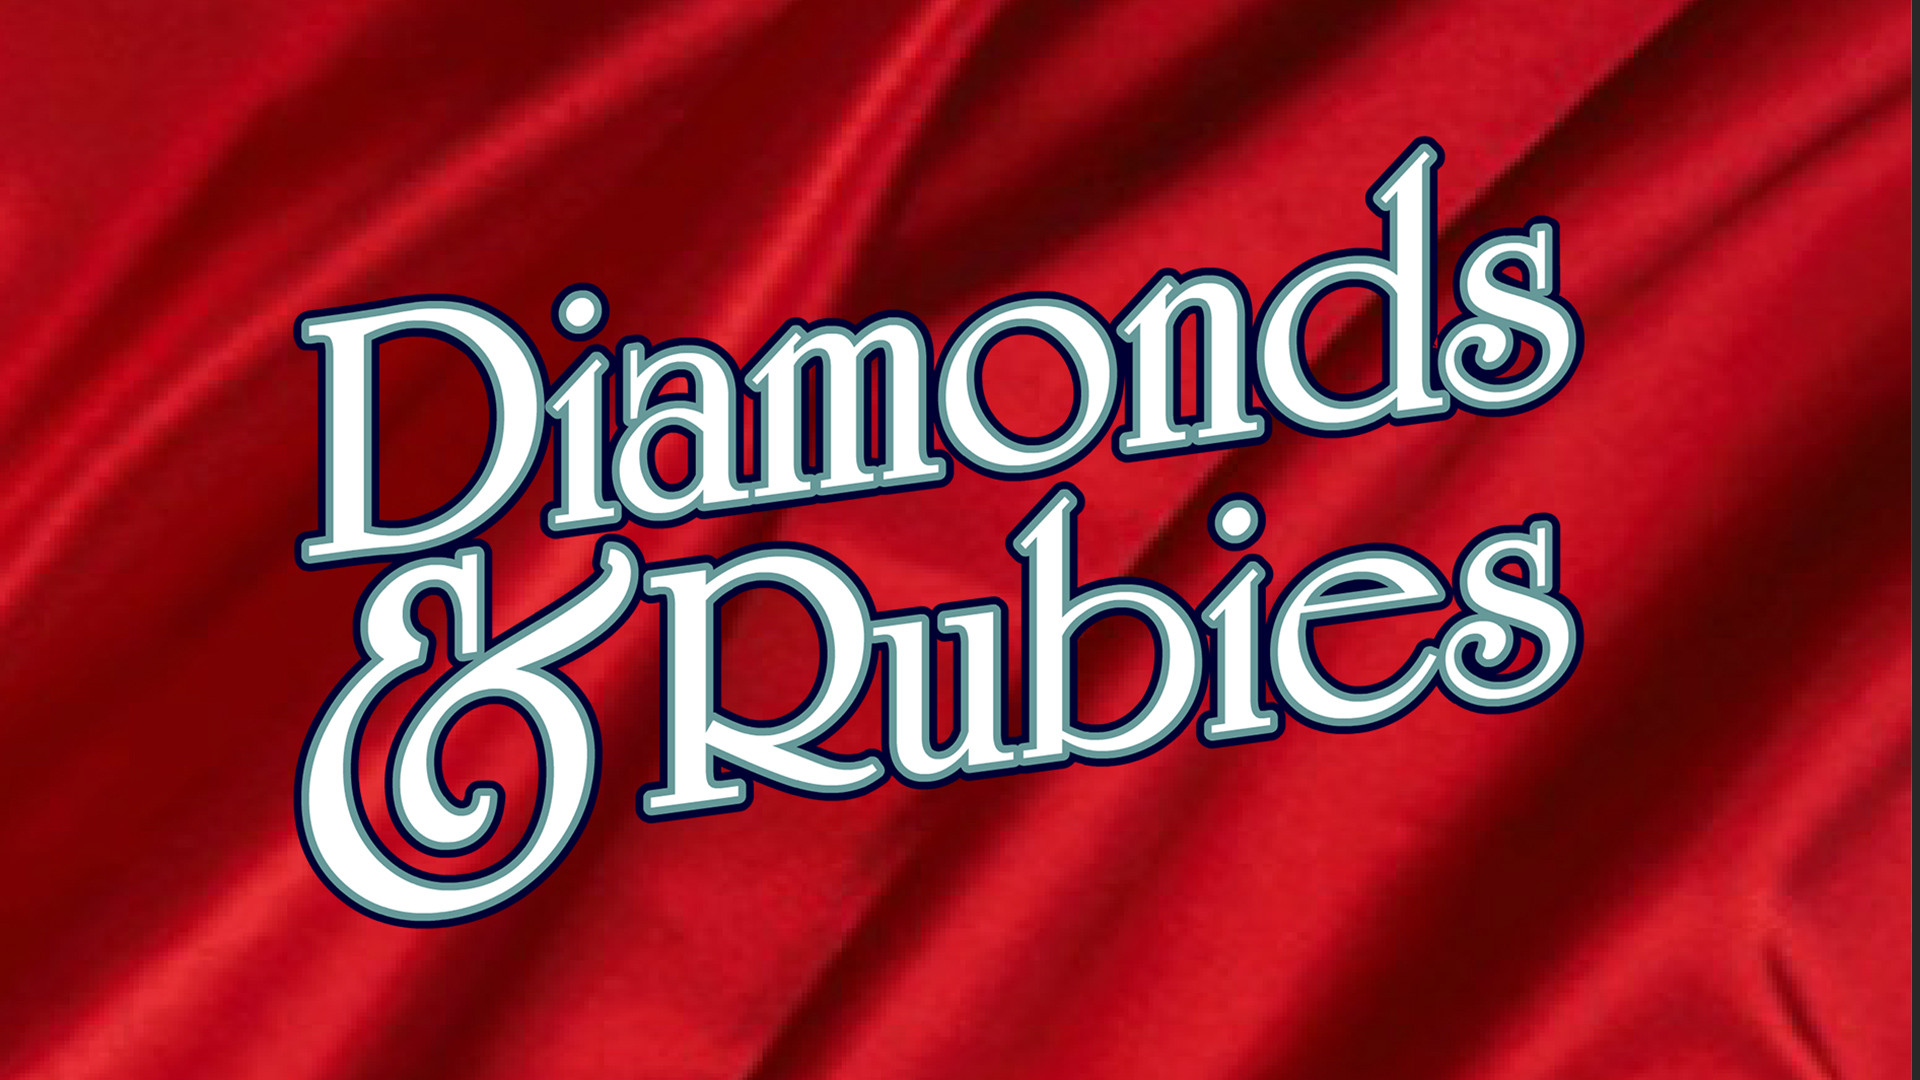 Diamonds & Rubies